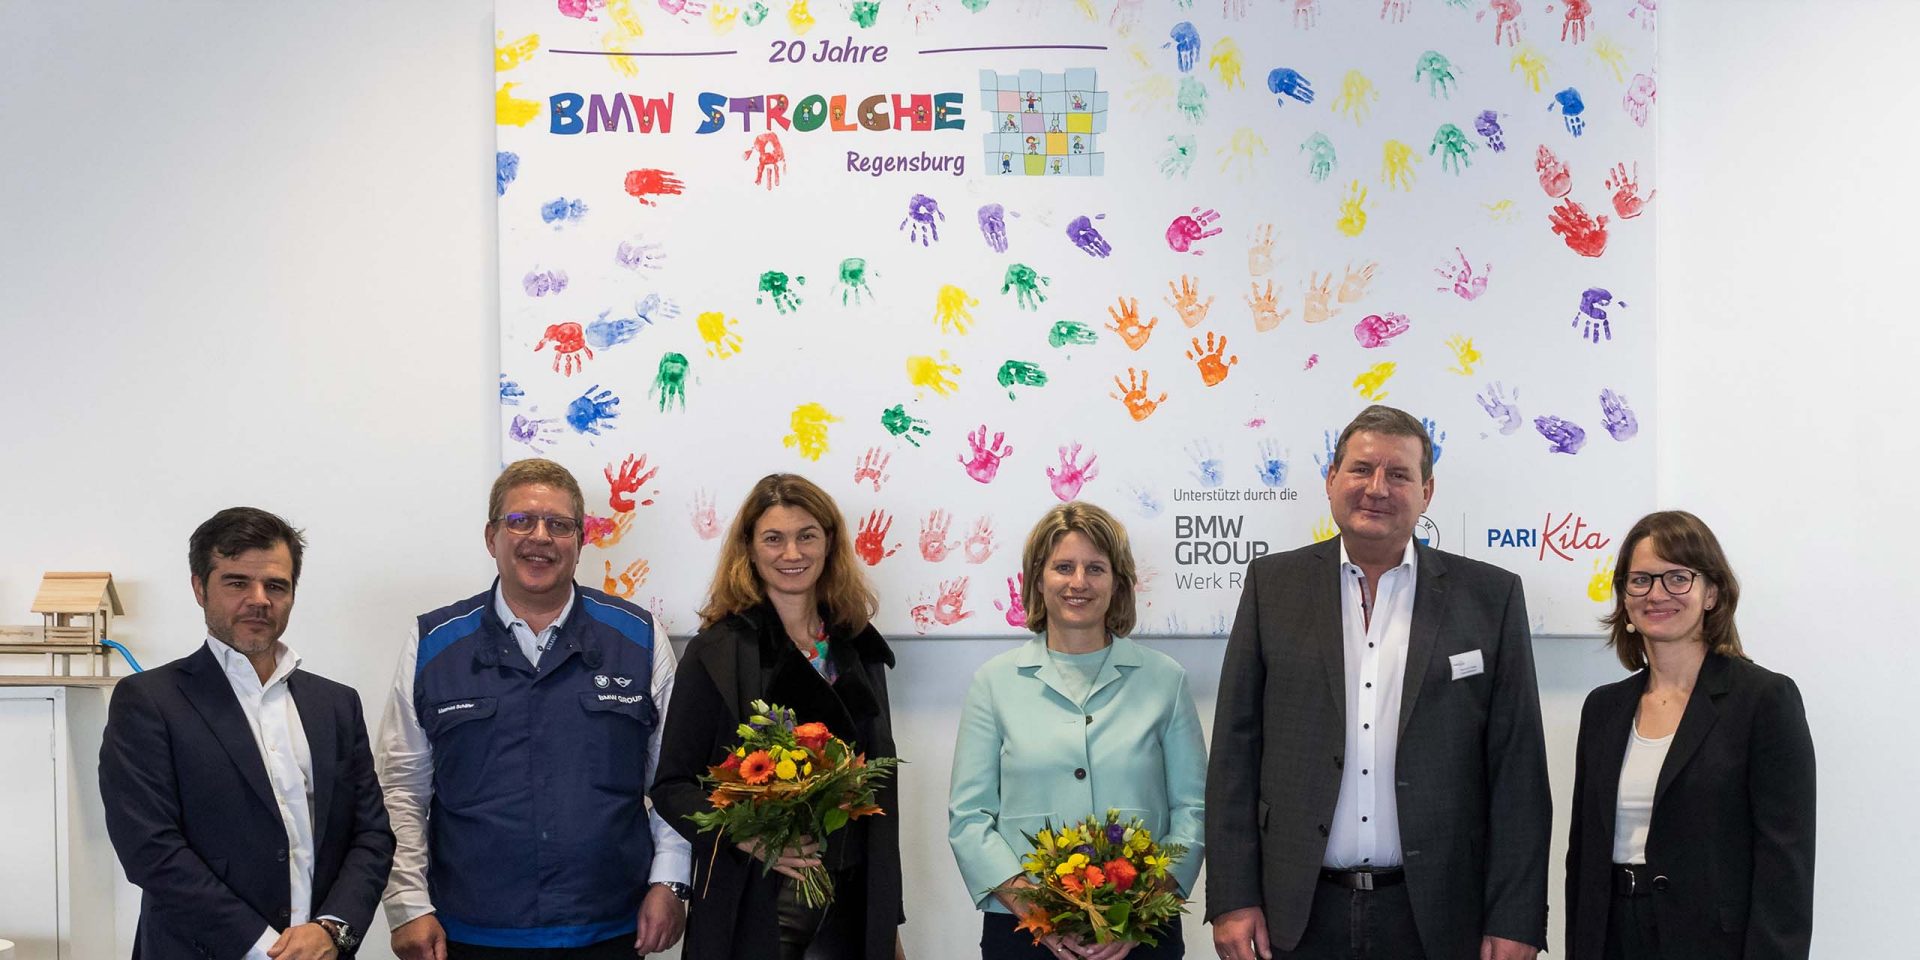 20 Jahre „BMW Strolche Regensburg“ – eine Erfolgsgeschichte